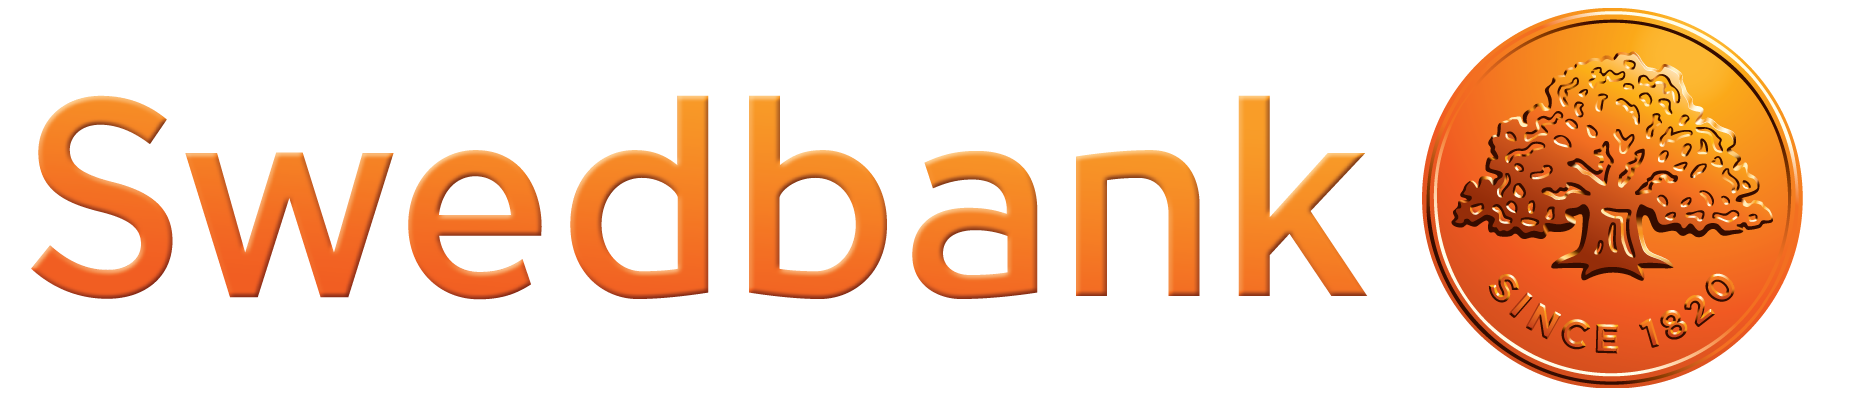 Image result for swedbank logo